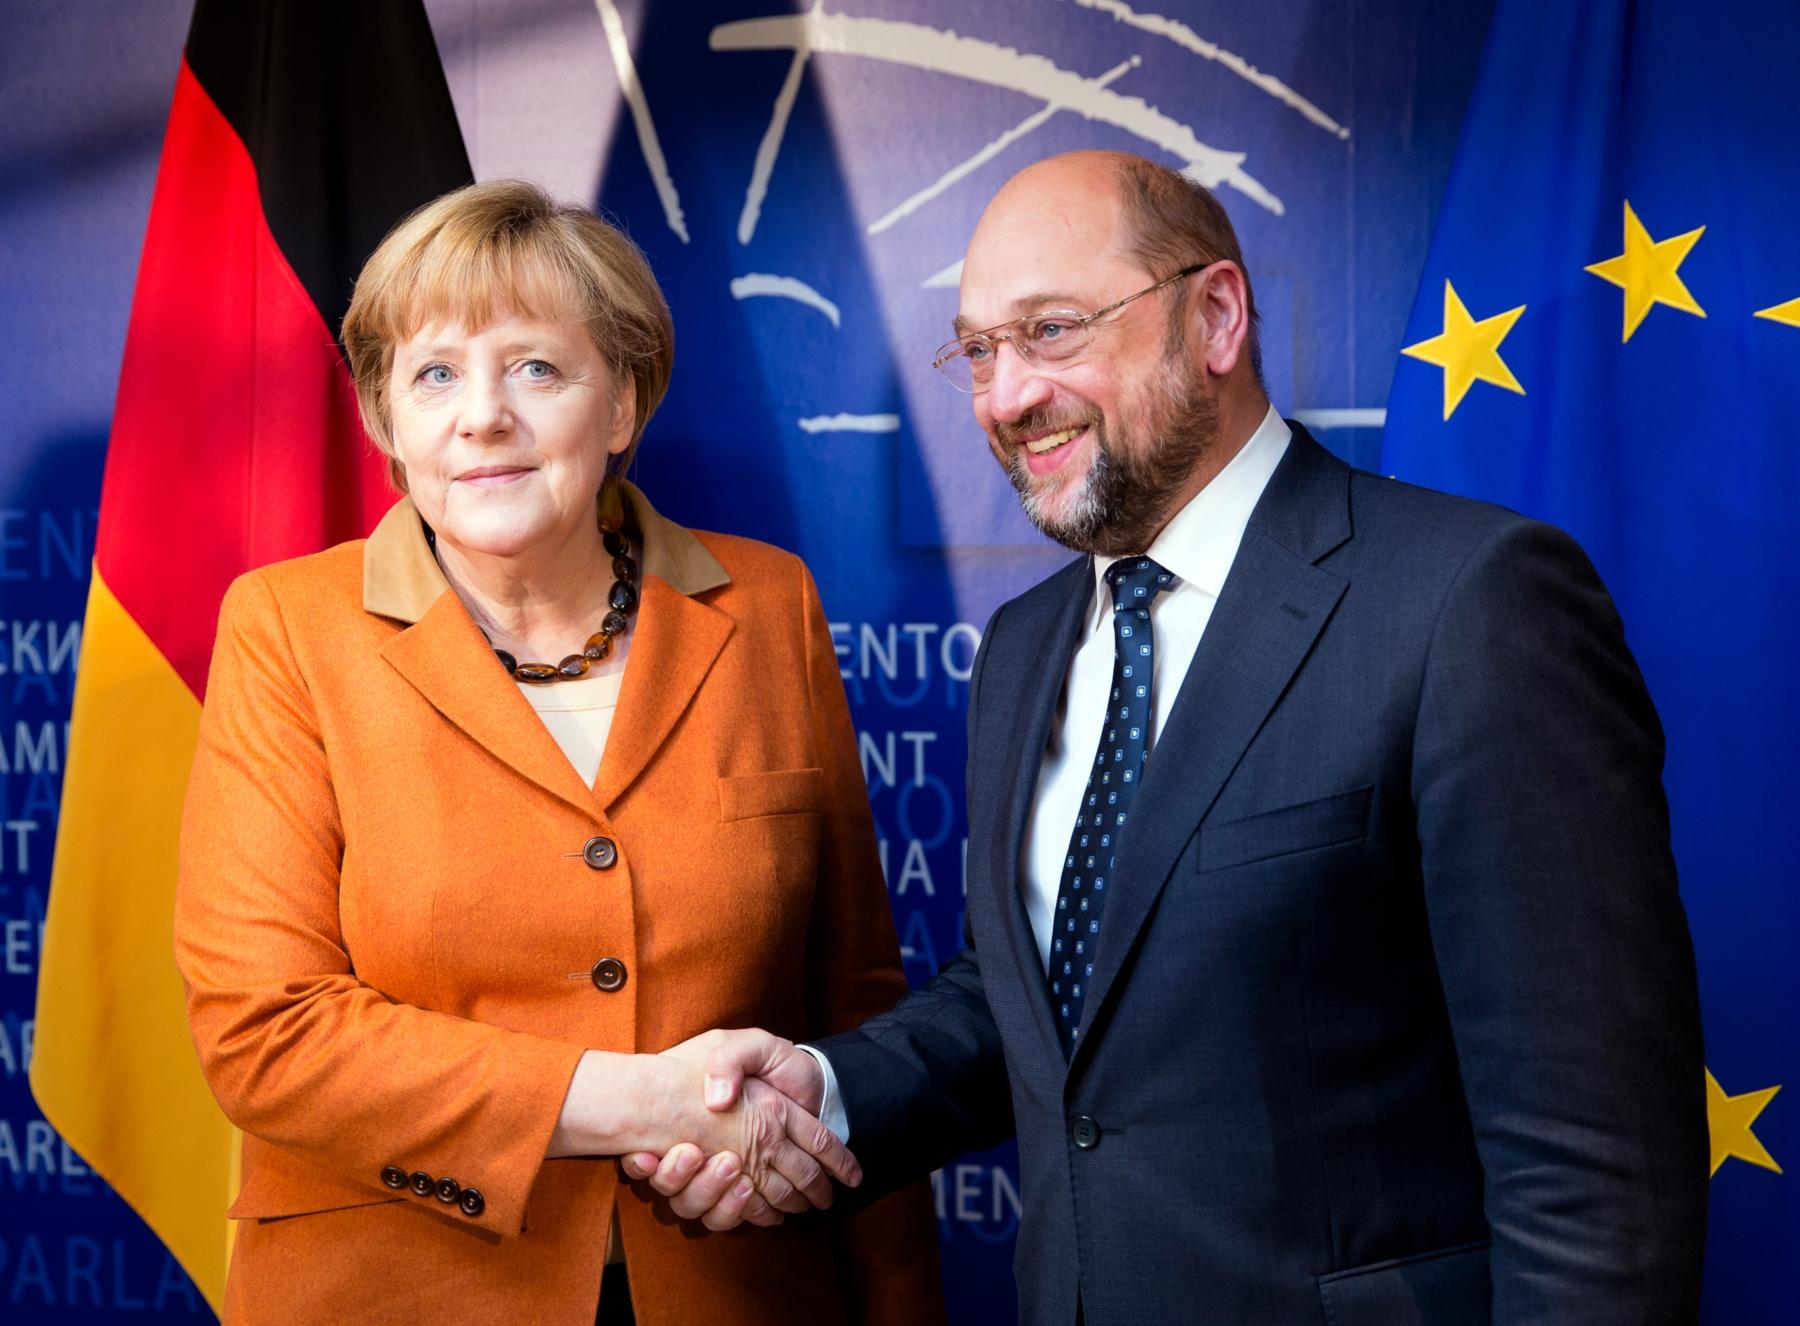 Koalicioni ugovor stranaka koje će činiti Njemačku vladu sadrži stavku o zapadnom Balkanu